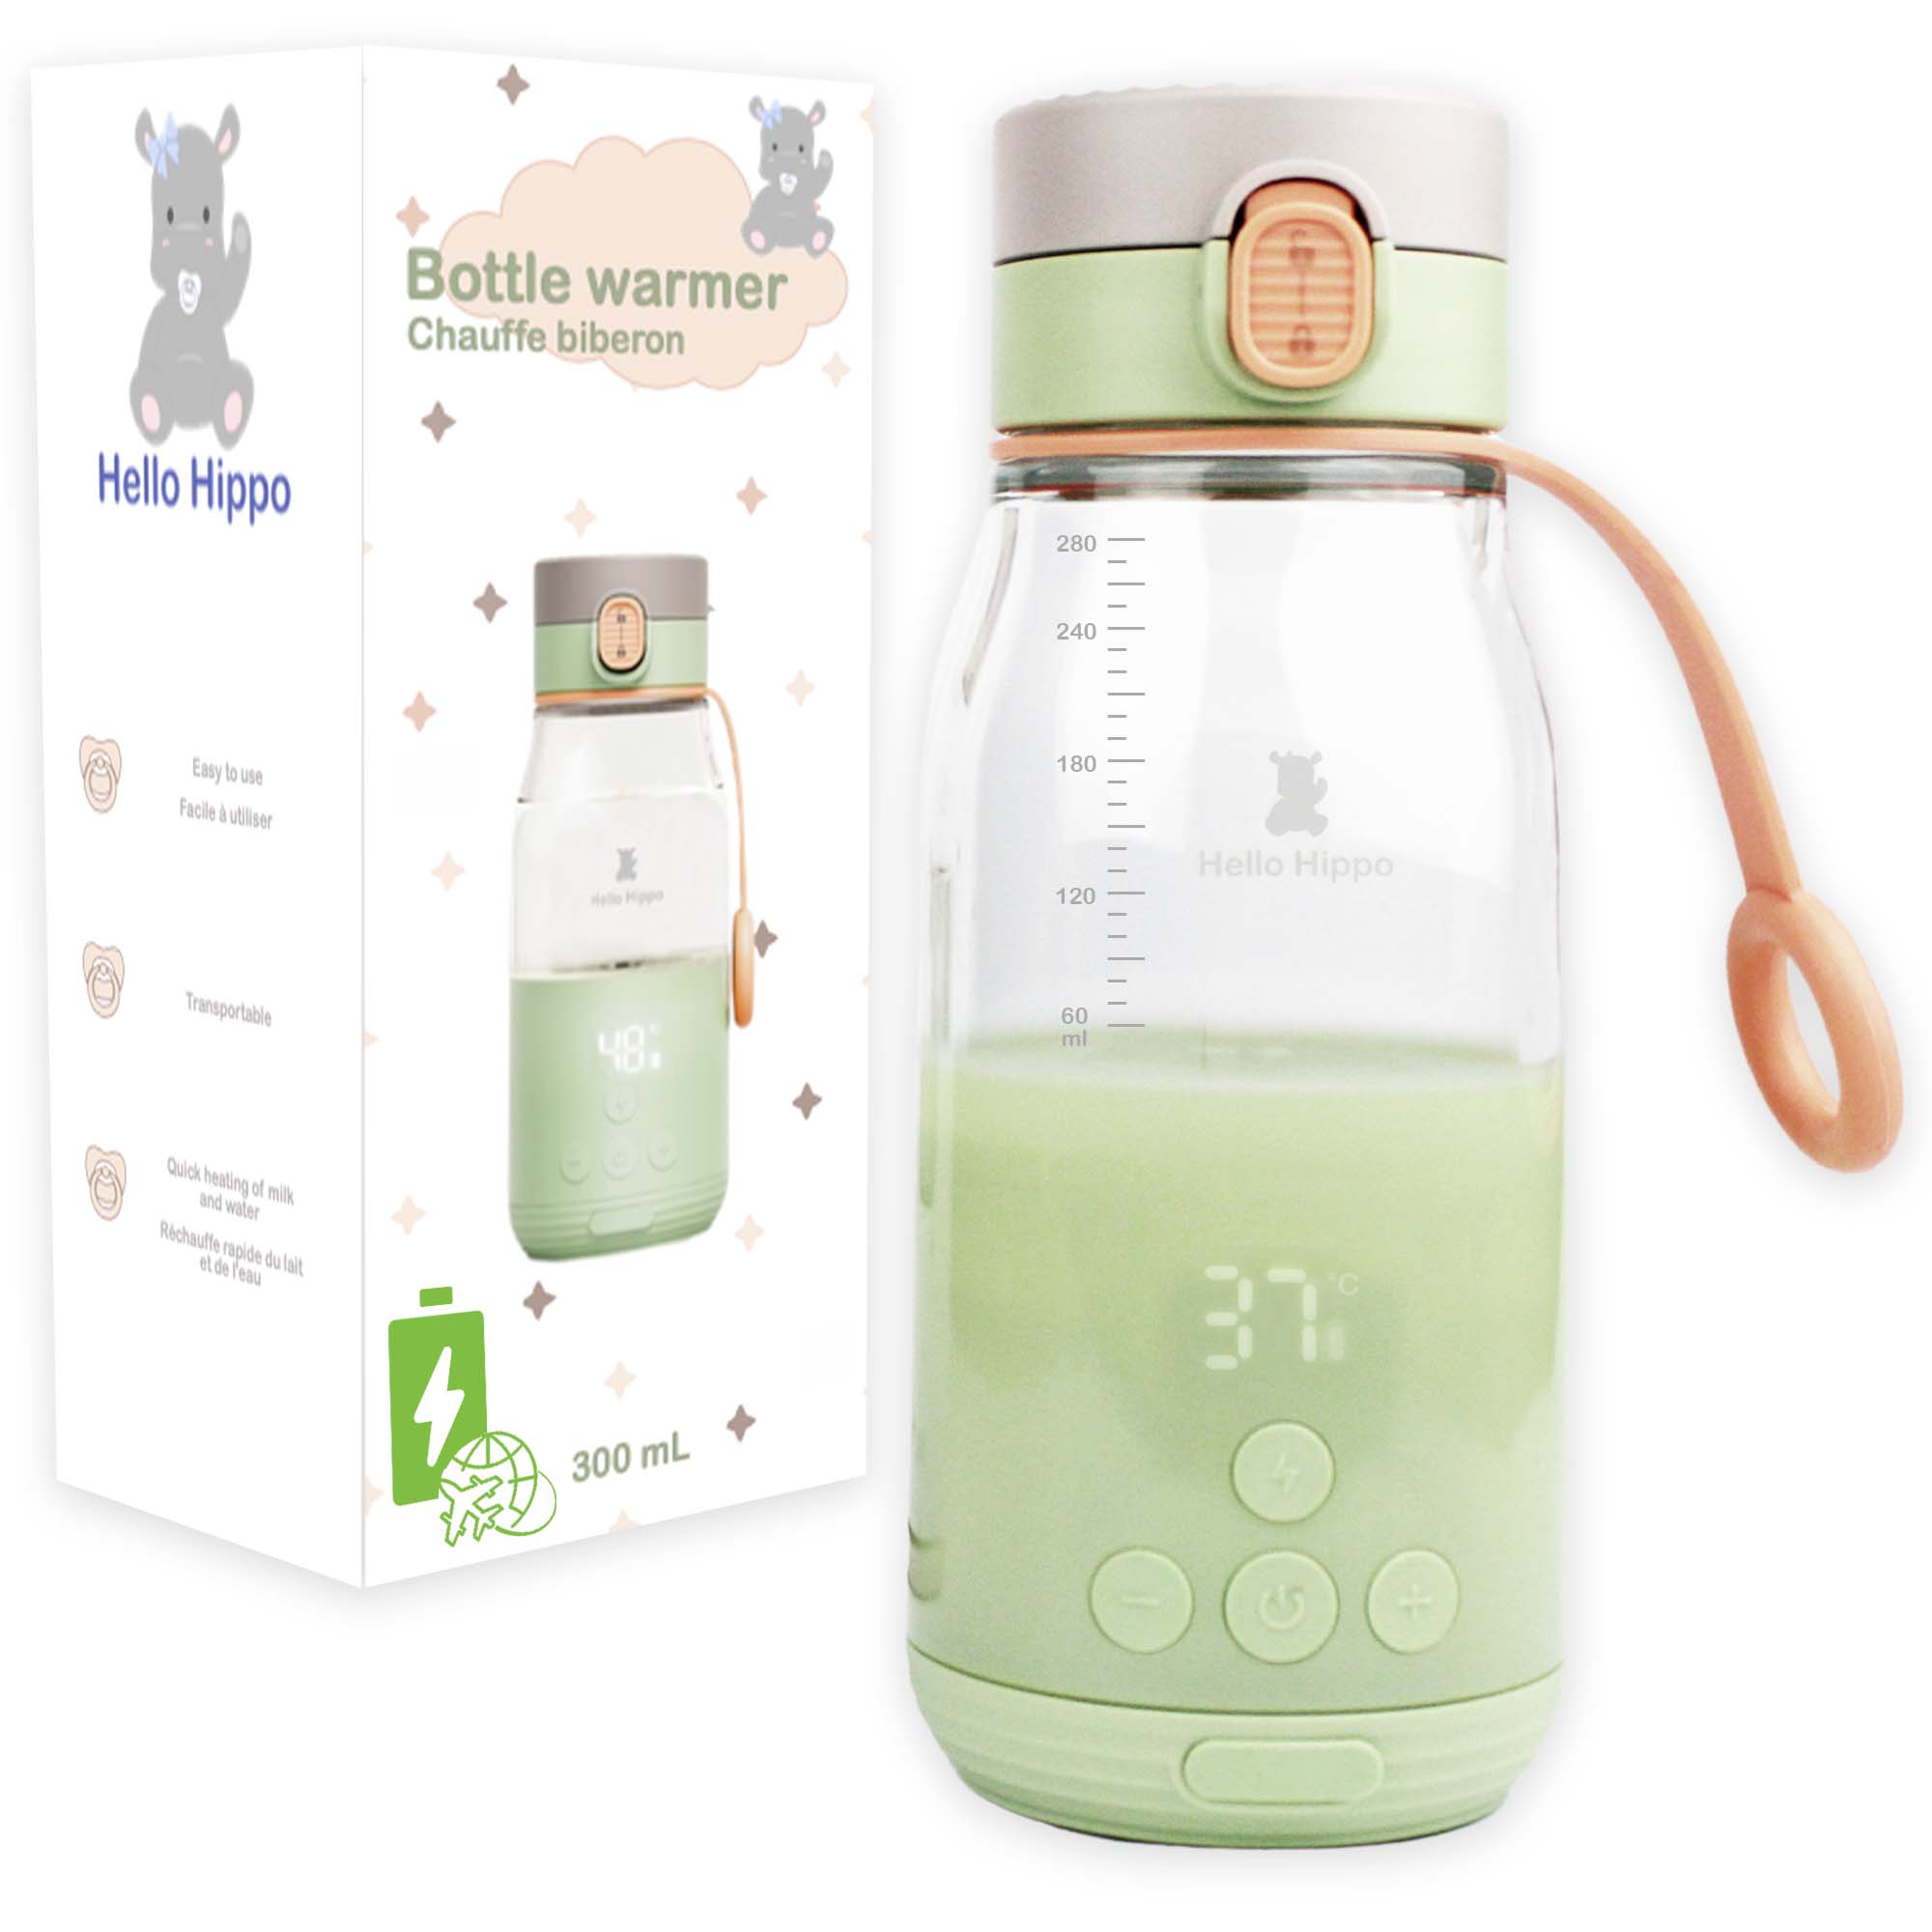 Chauffe-eau portable rechargeable pour le lait maternisé, le lait